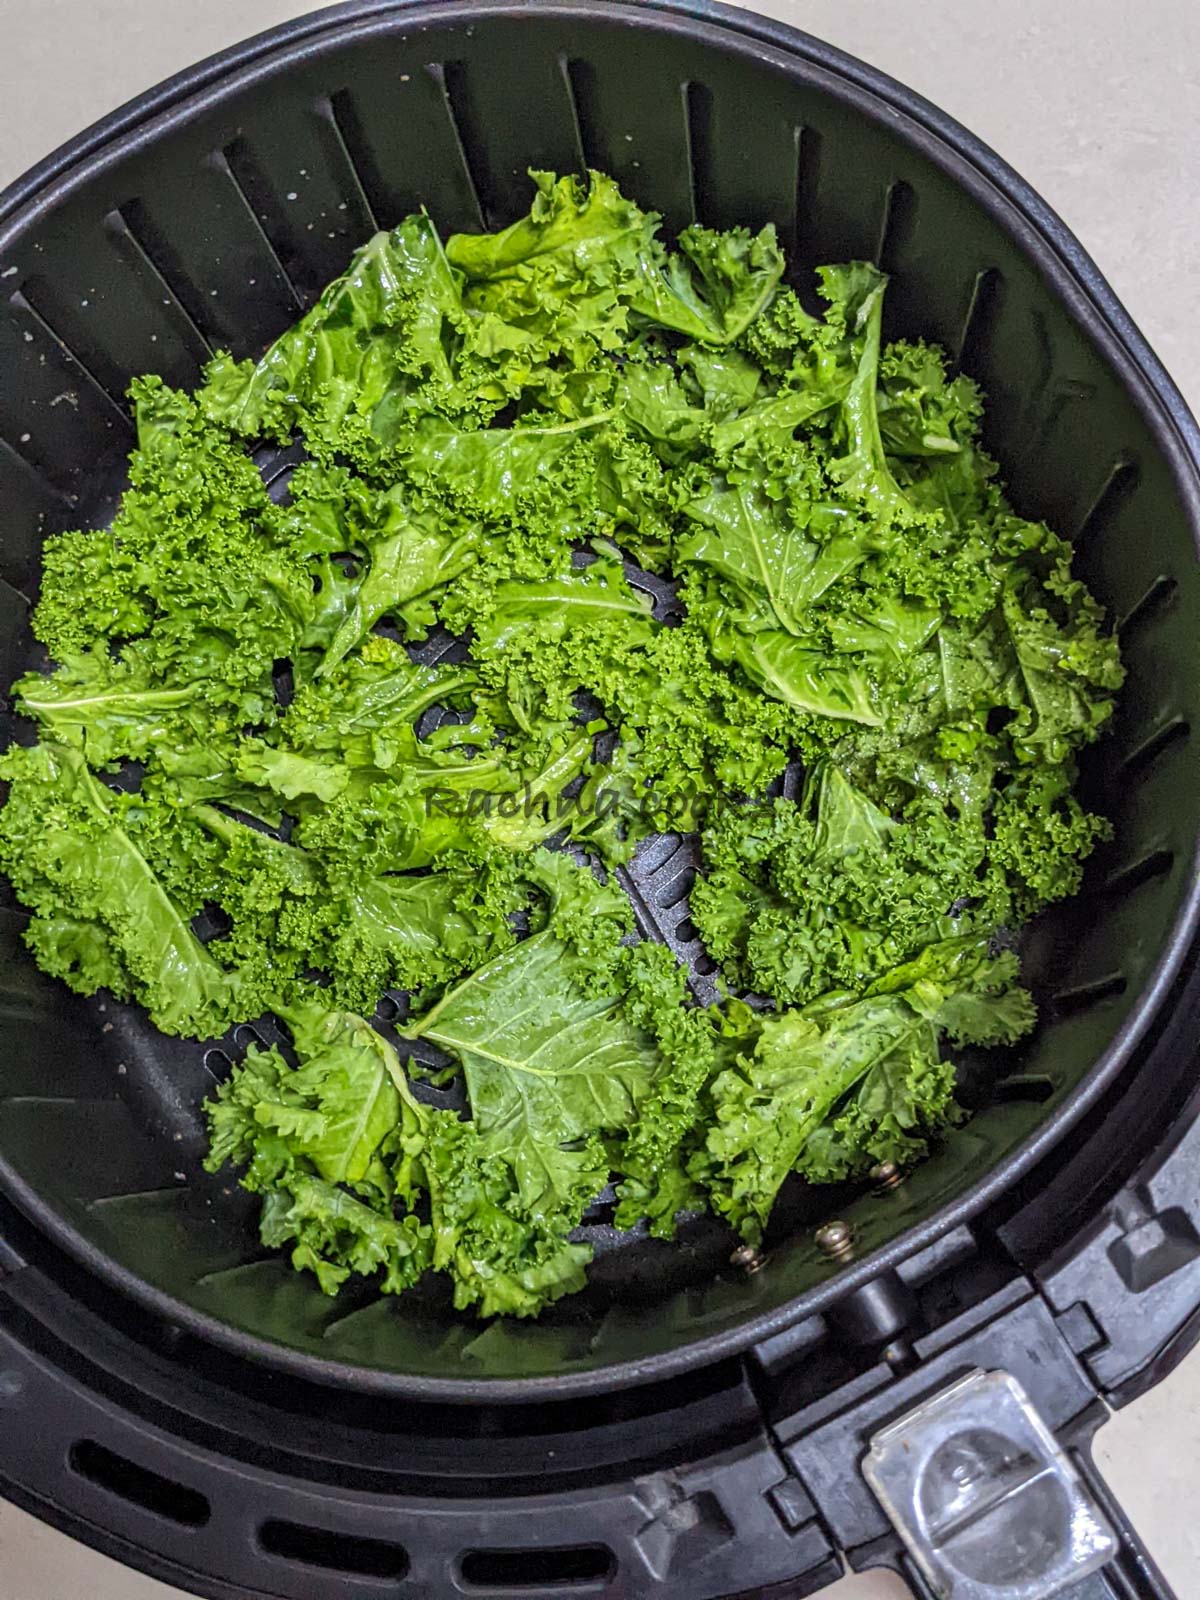 Kale leaves kept for air frying in air fryer basket.